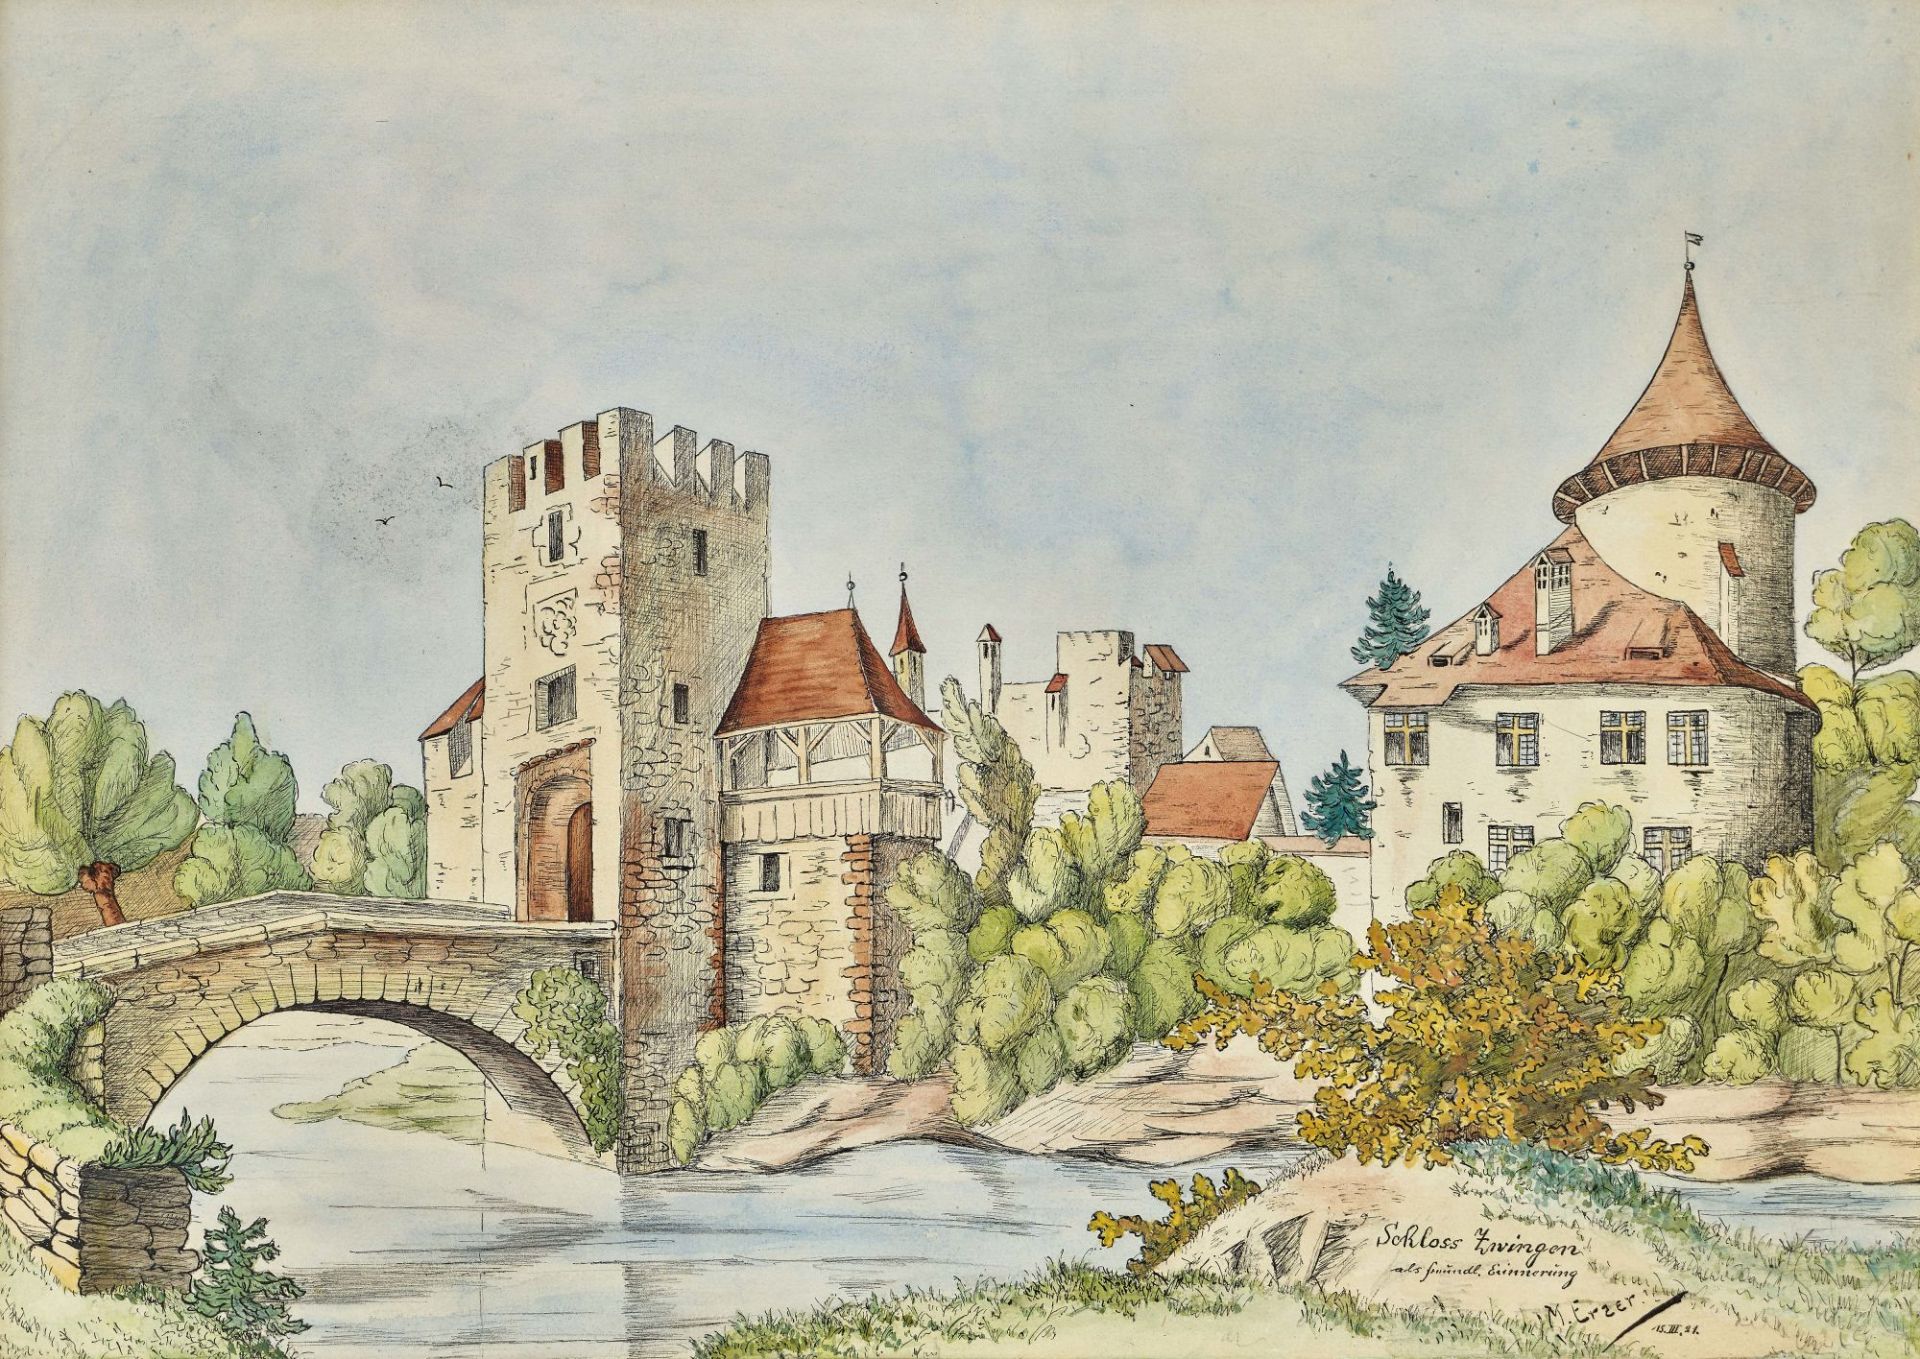 ERZER, M.: "Schloss Zwingen".